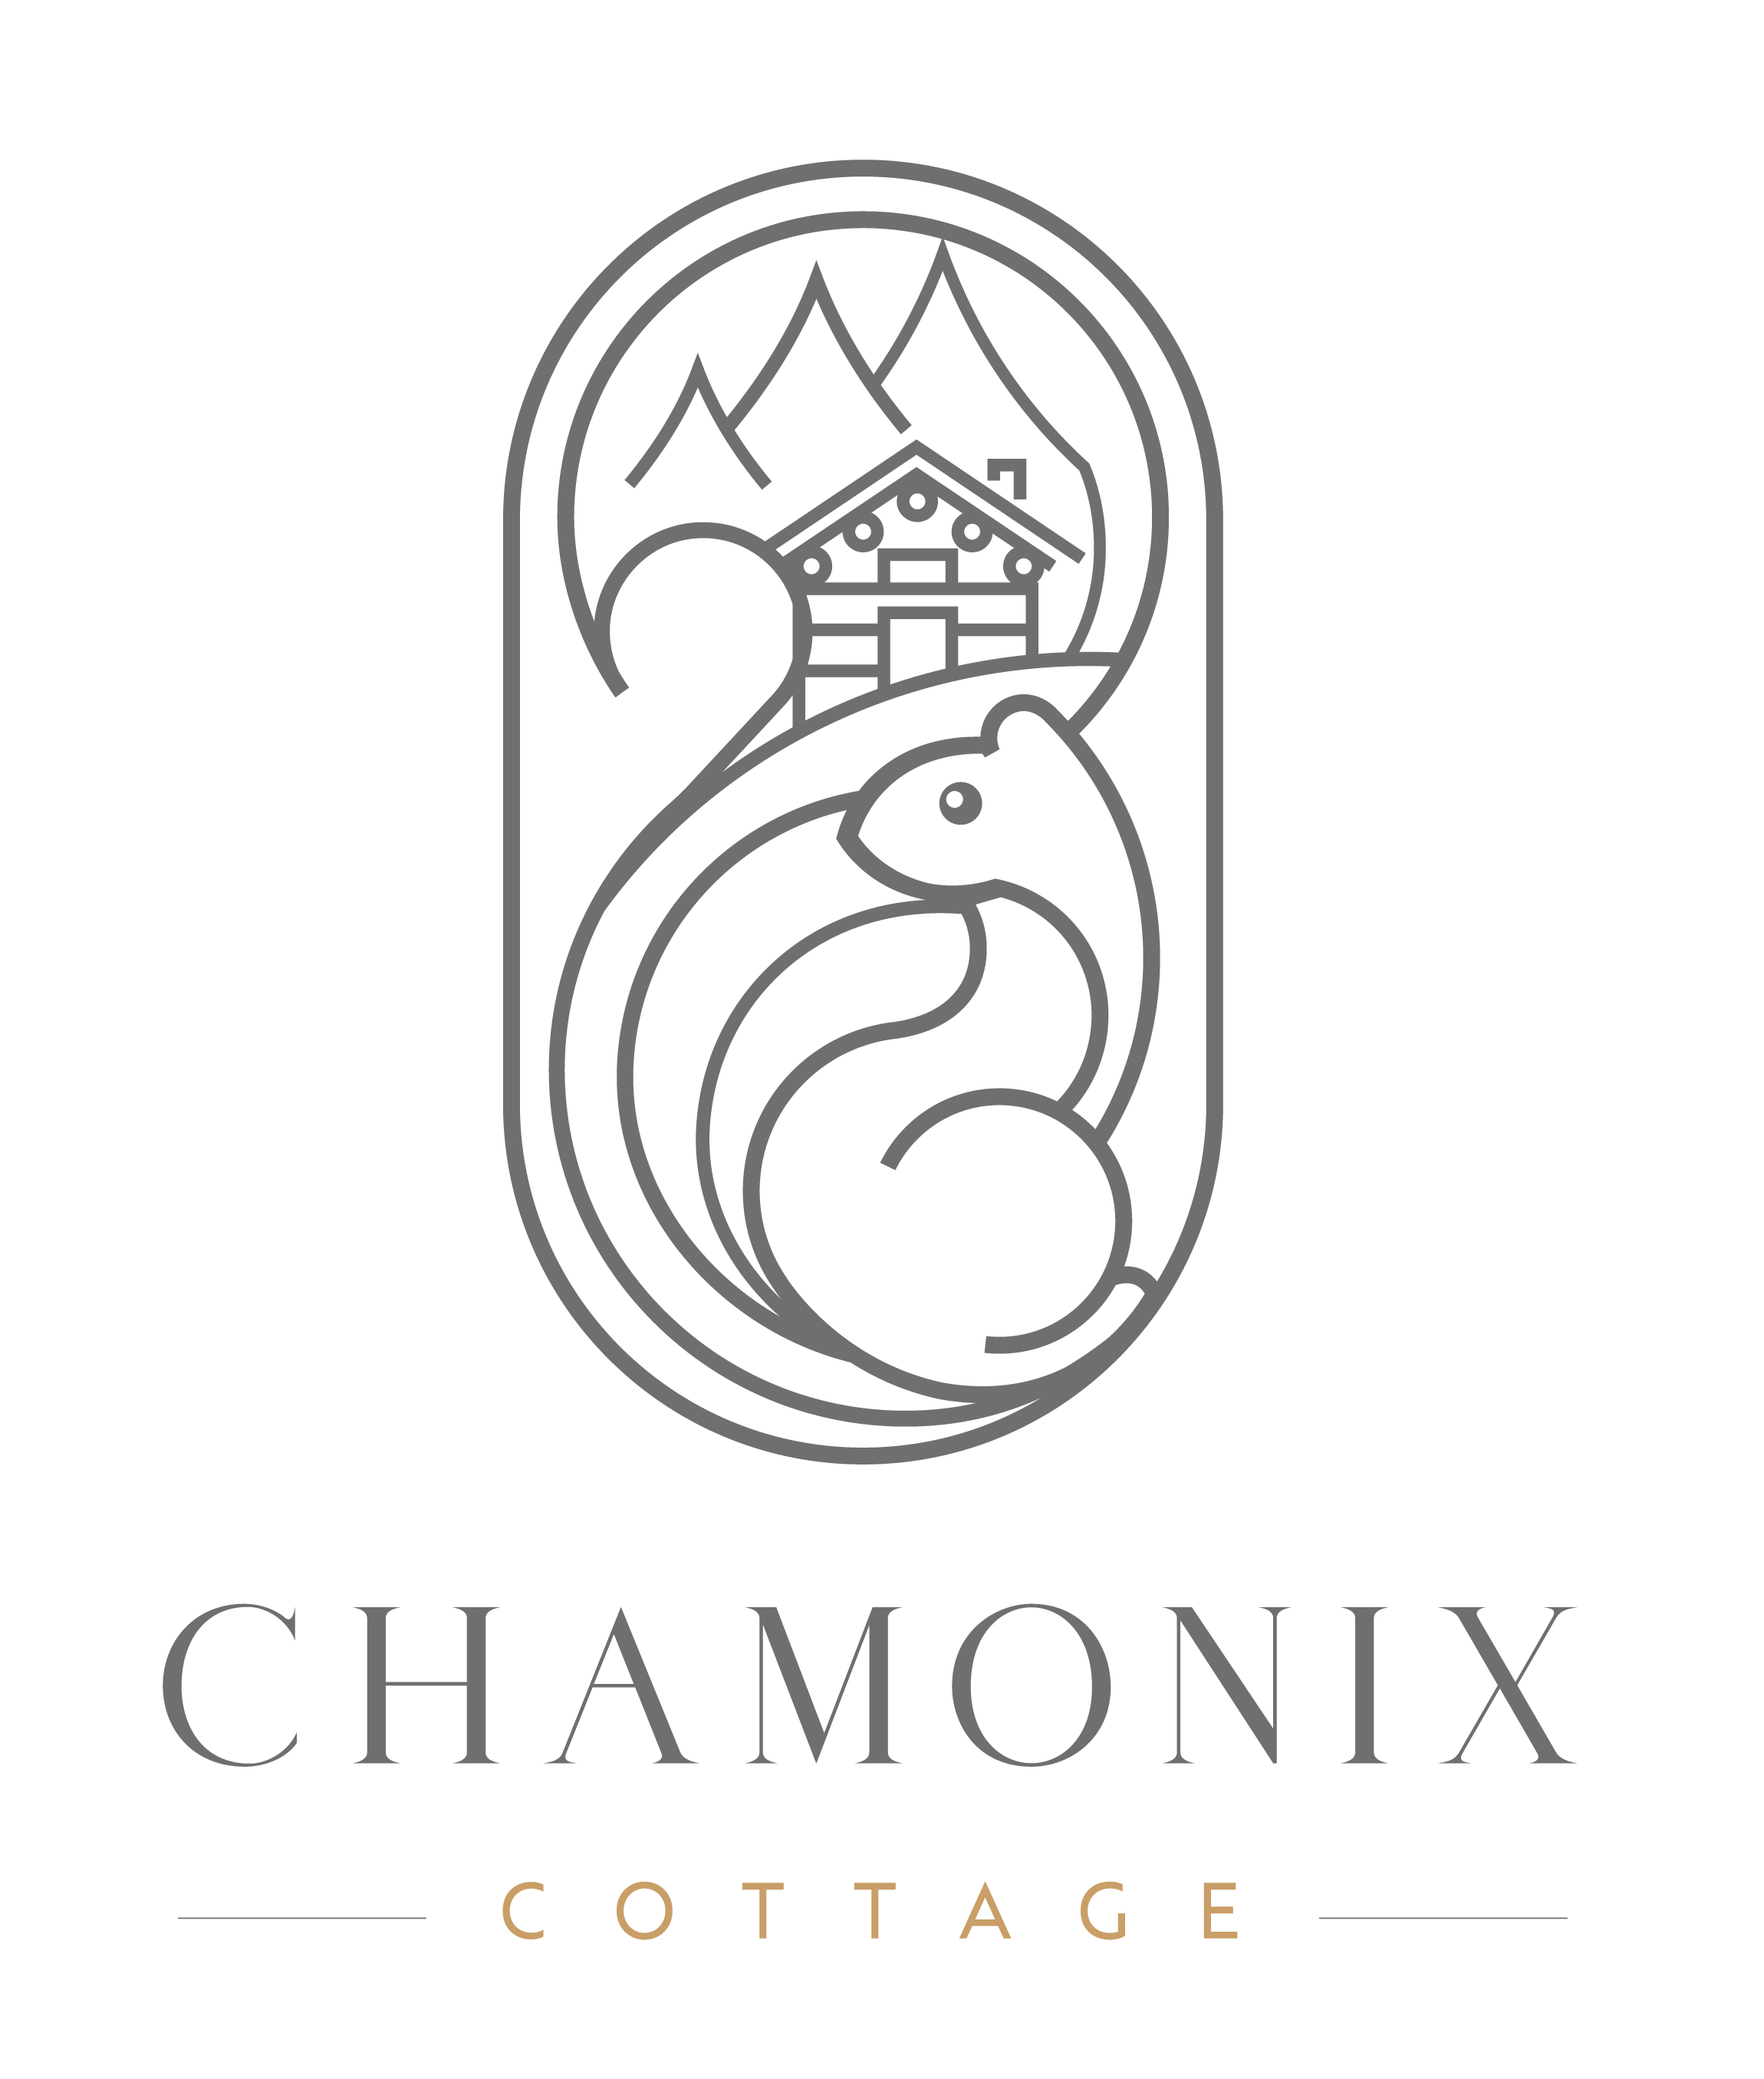 Chamonix Cottage | Les Services - Chamonix Cottage